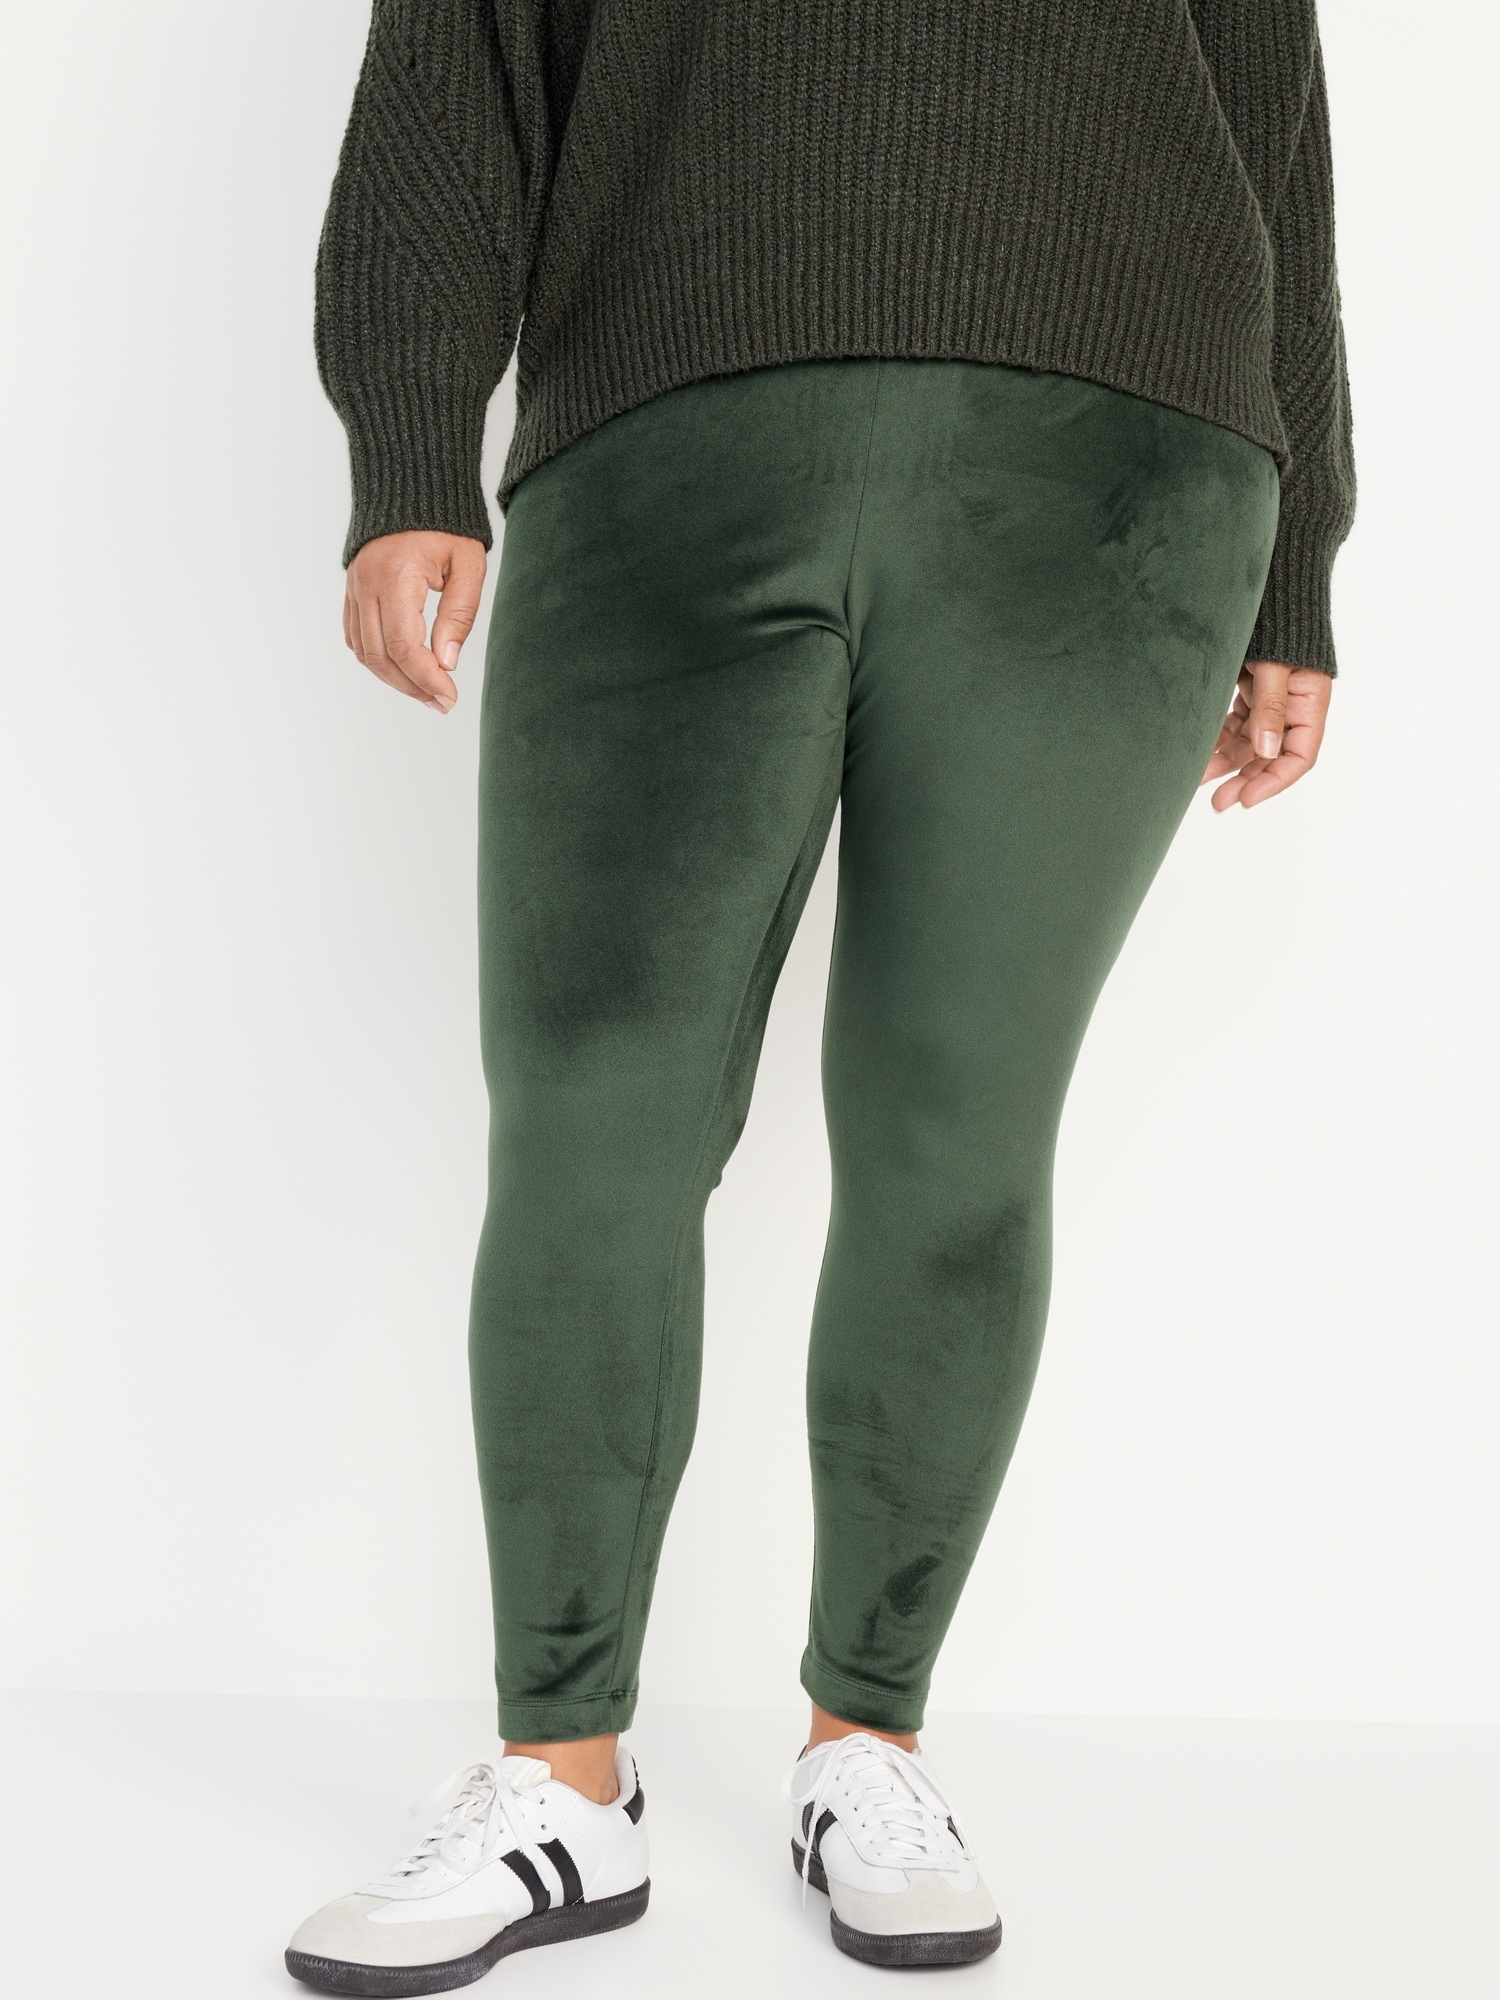 Green High Waisted Velvet Legging, Pants